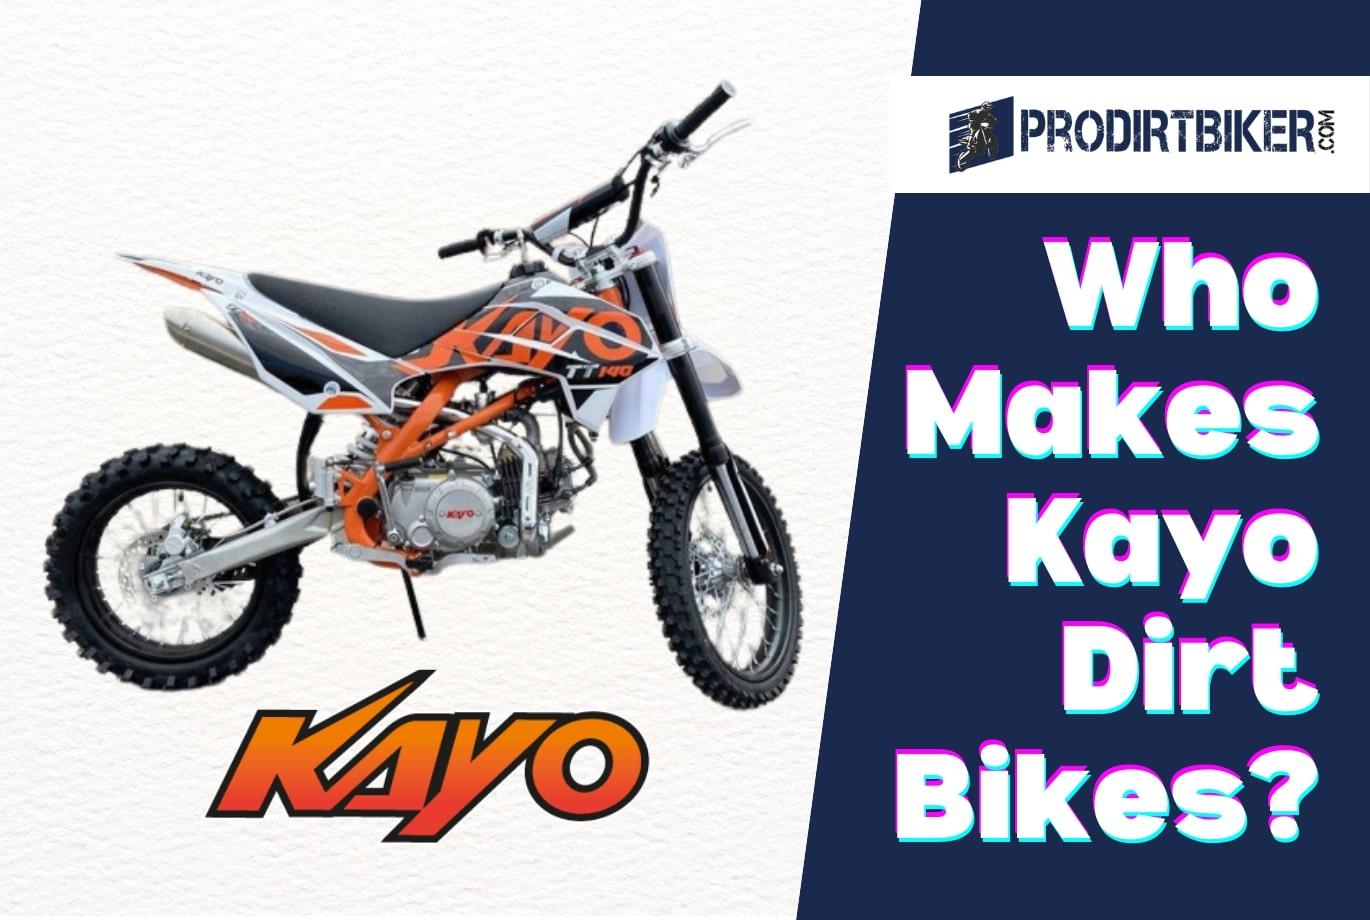 Who Makes Kayo Dirt Bikes? Behind the Ride